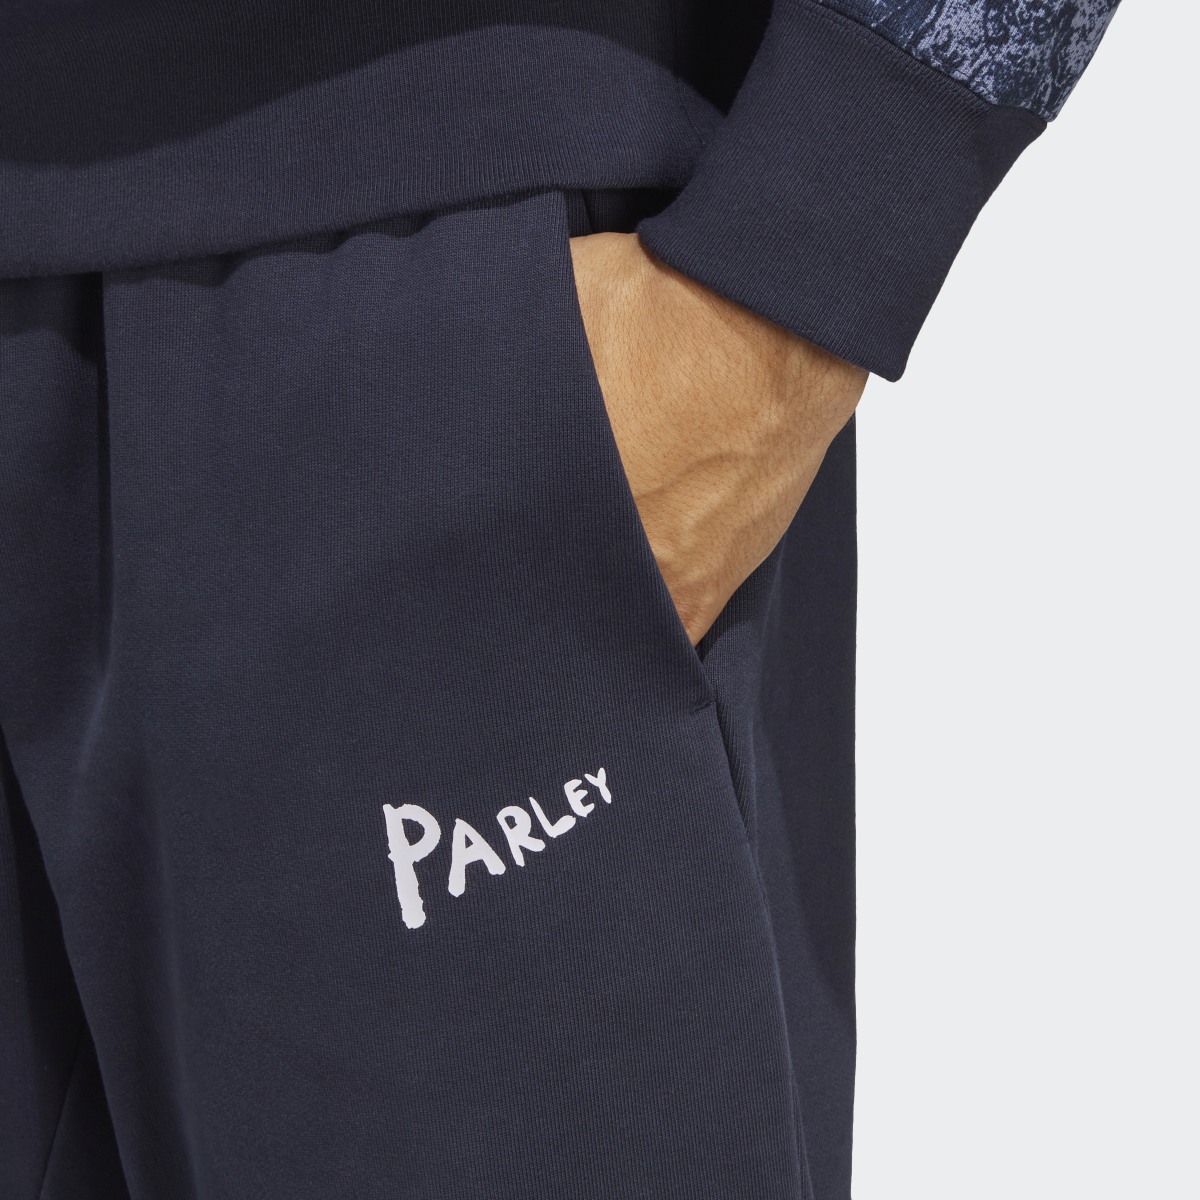 Adidas Pantalón 7/8 adidas x Parley (Género neutro). 5